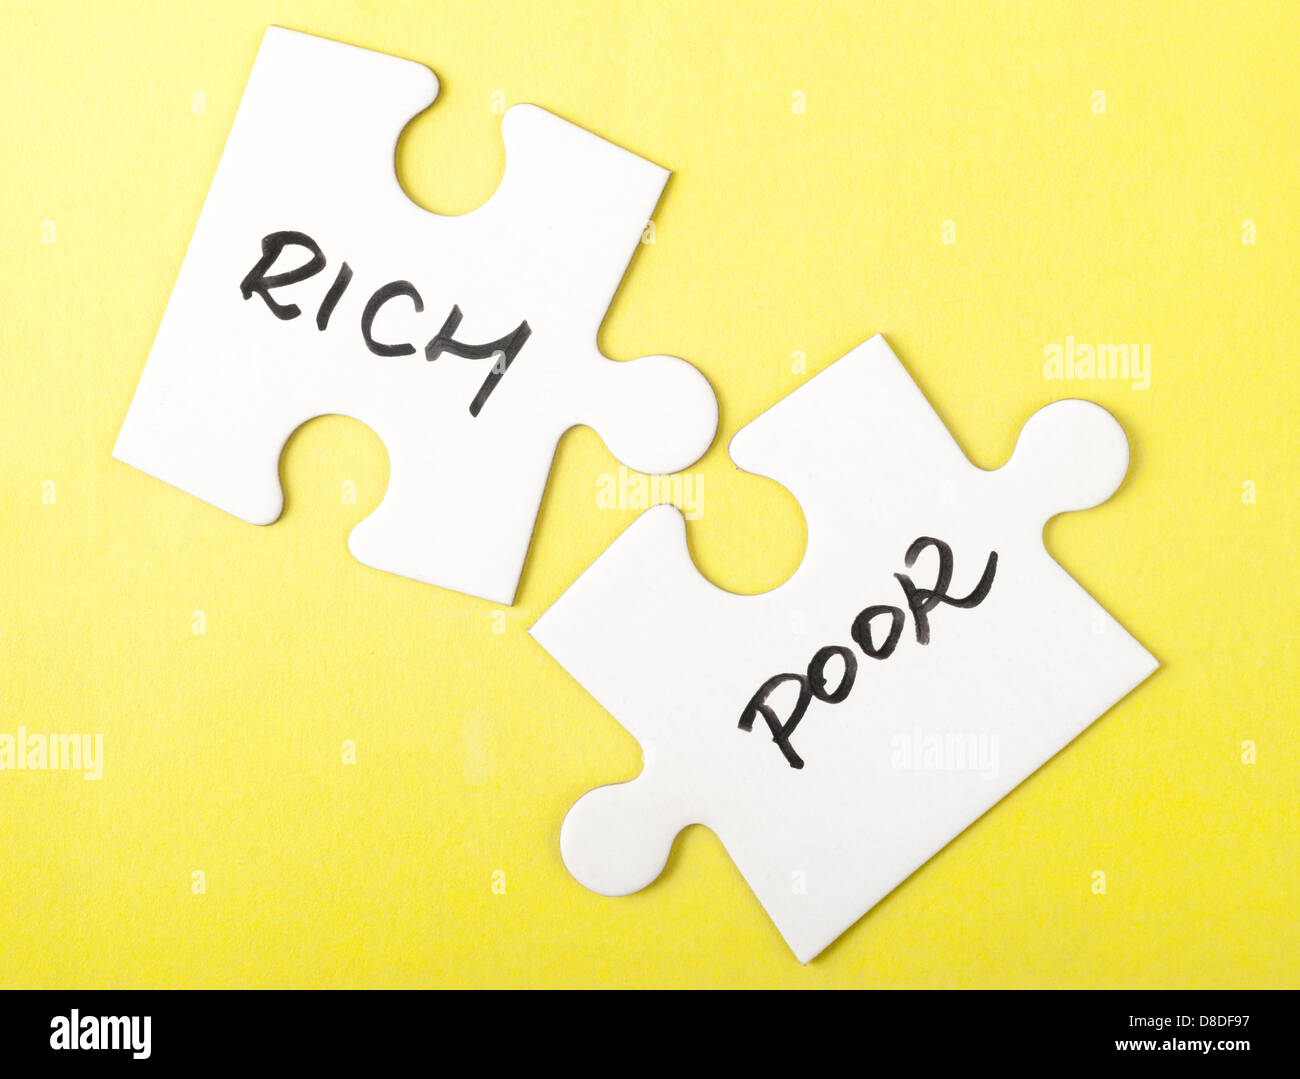 Ricchi e poveri parole scritte su due pezzi del puzzle Foto Stock